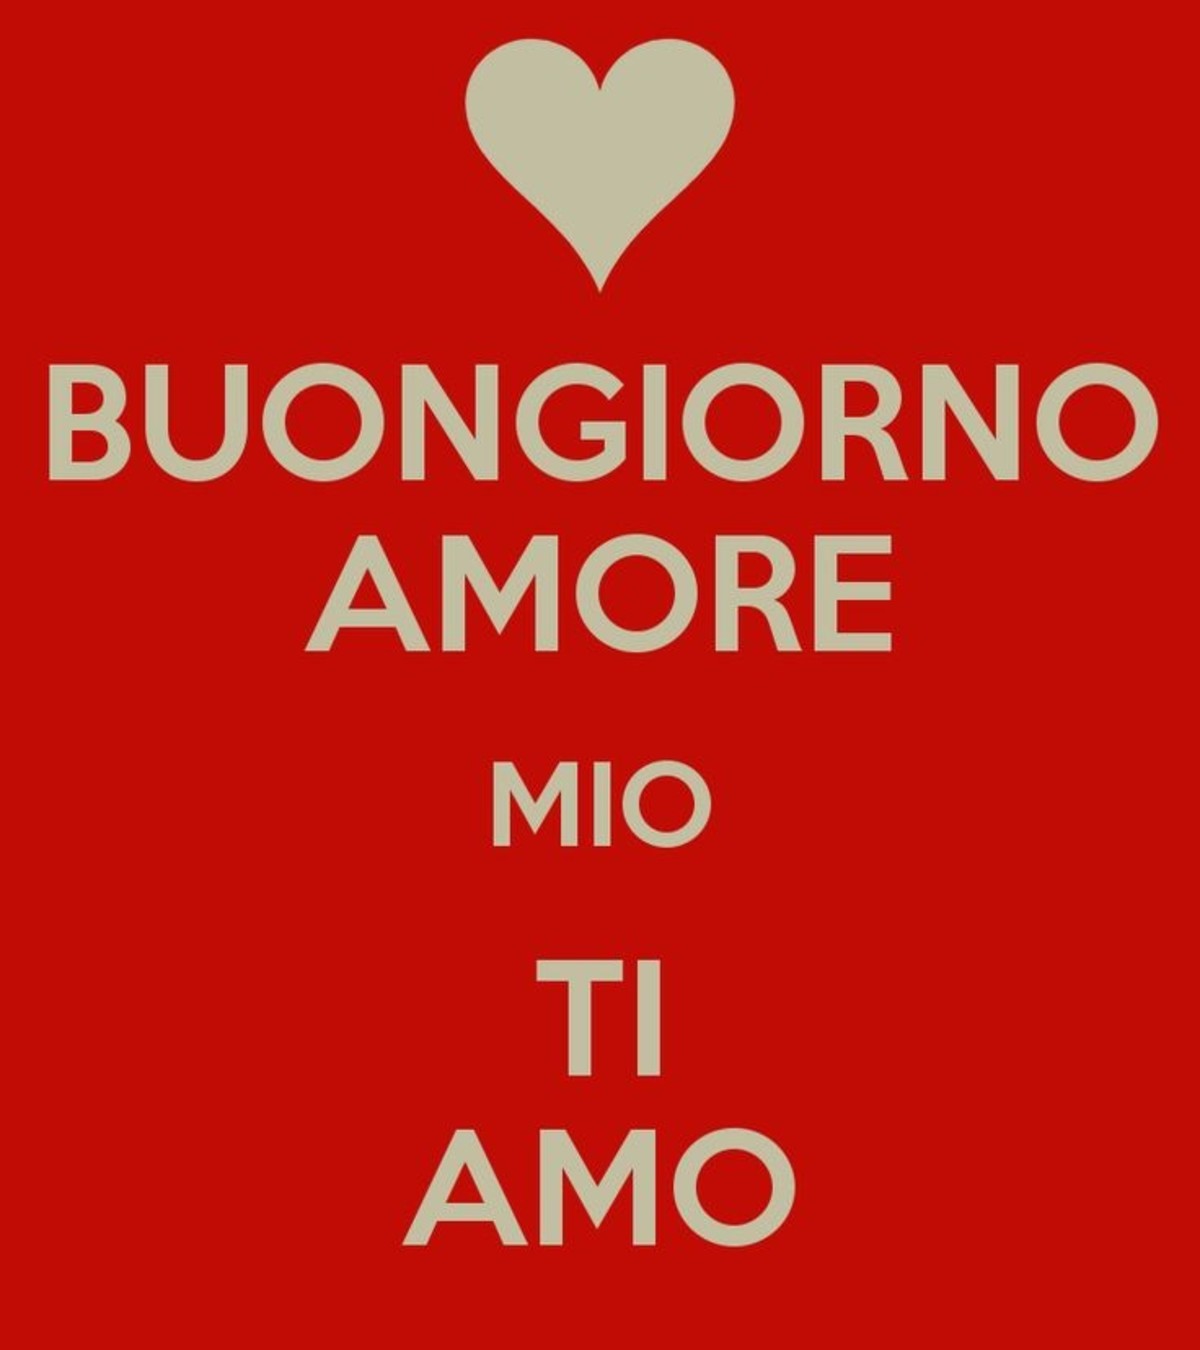 Amore язык. Любовные открытки на итальянском. Люблю тебя на итальянском. Открытка buongiorno Amore. Любовь на итальянском языке.